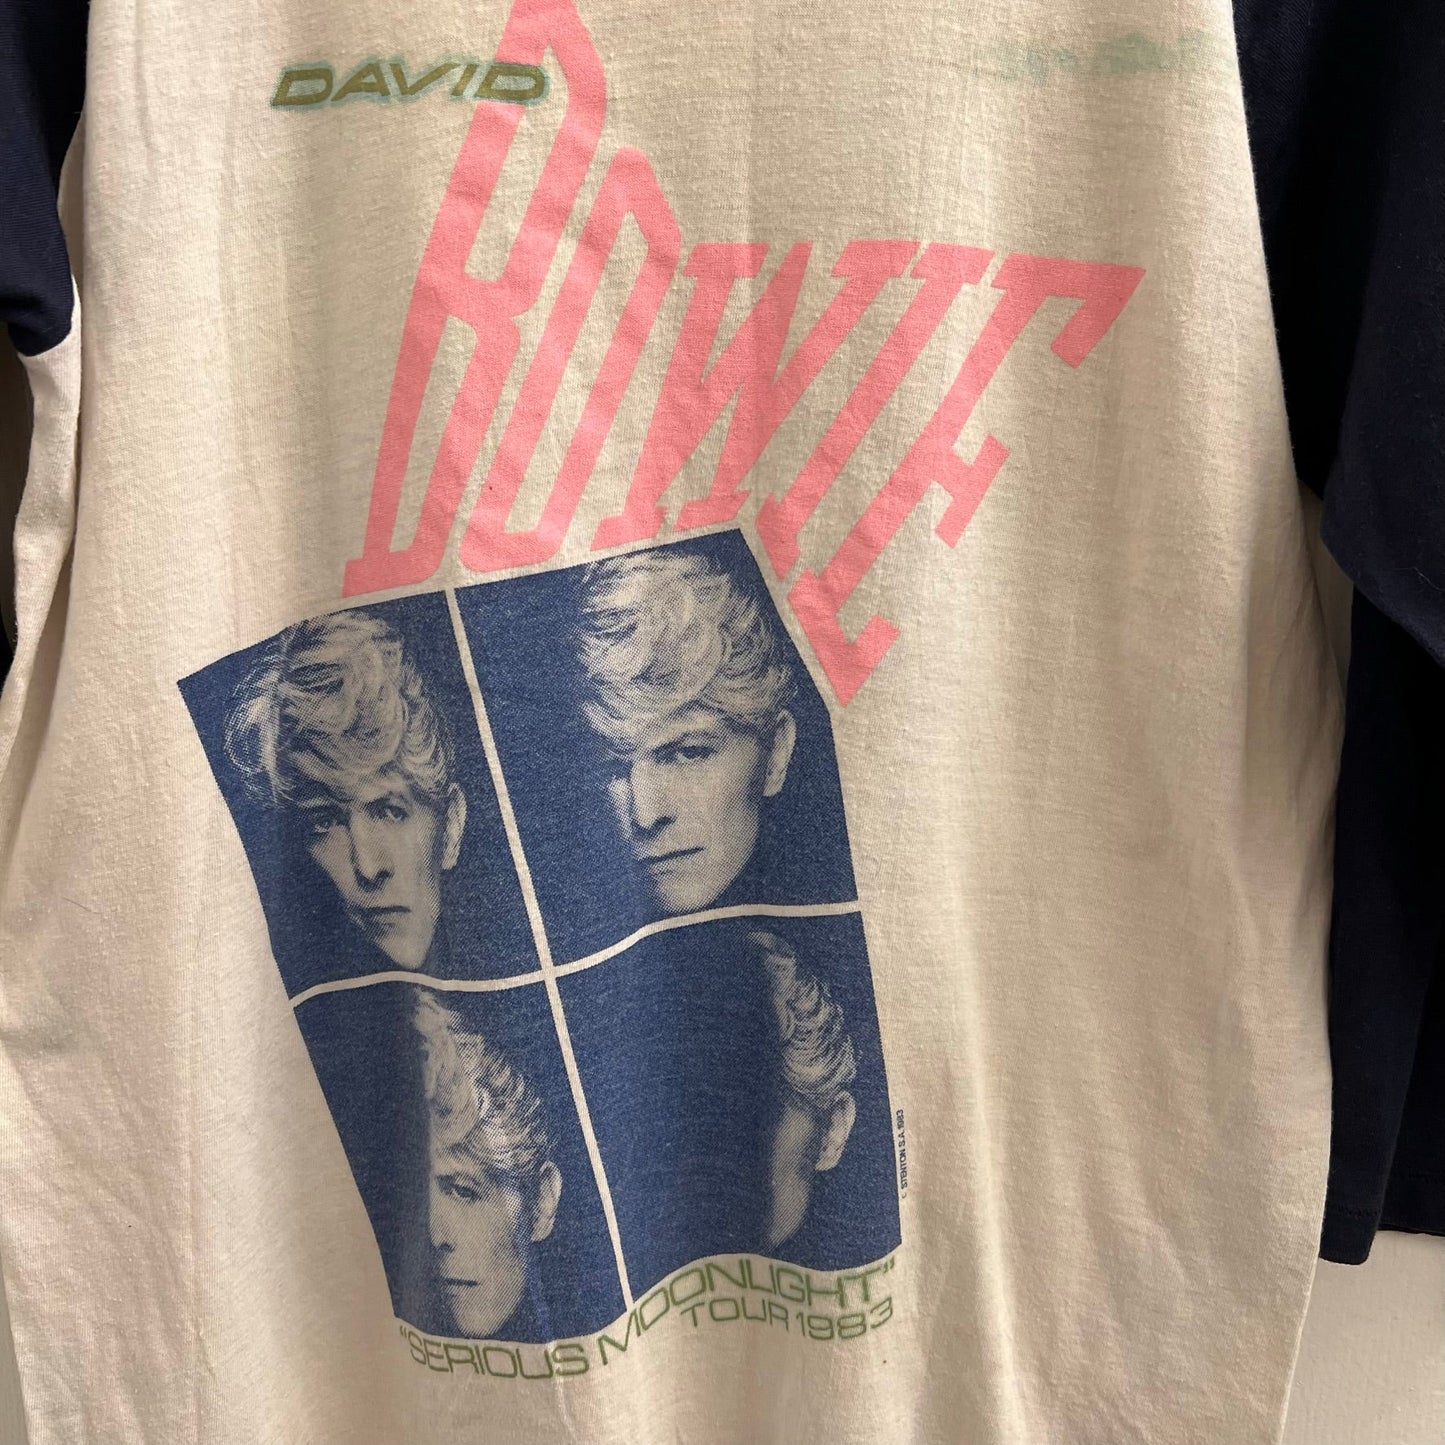 Vintage David Bowie 1983 Tour Shirt - TiquesandFleas at The Gray Market